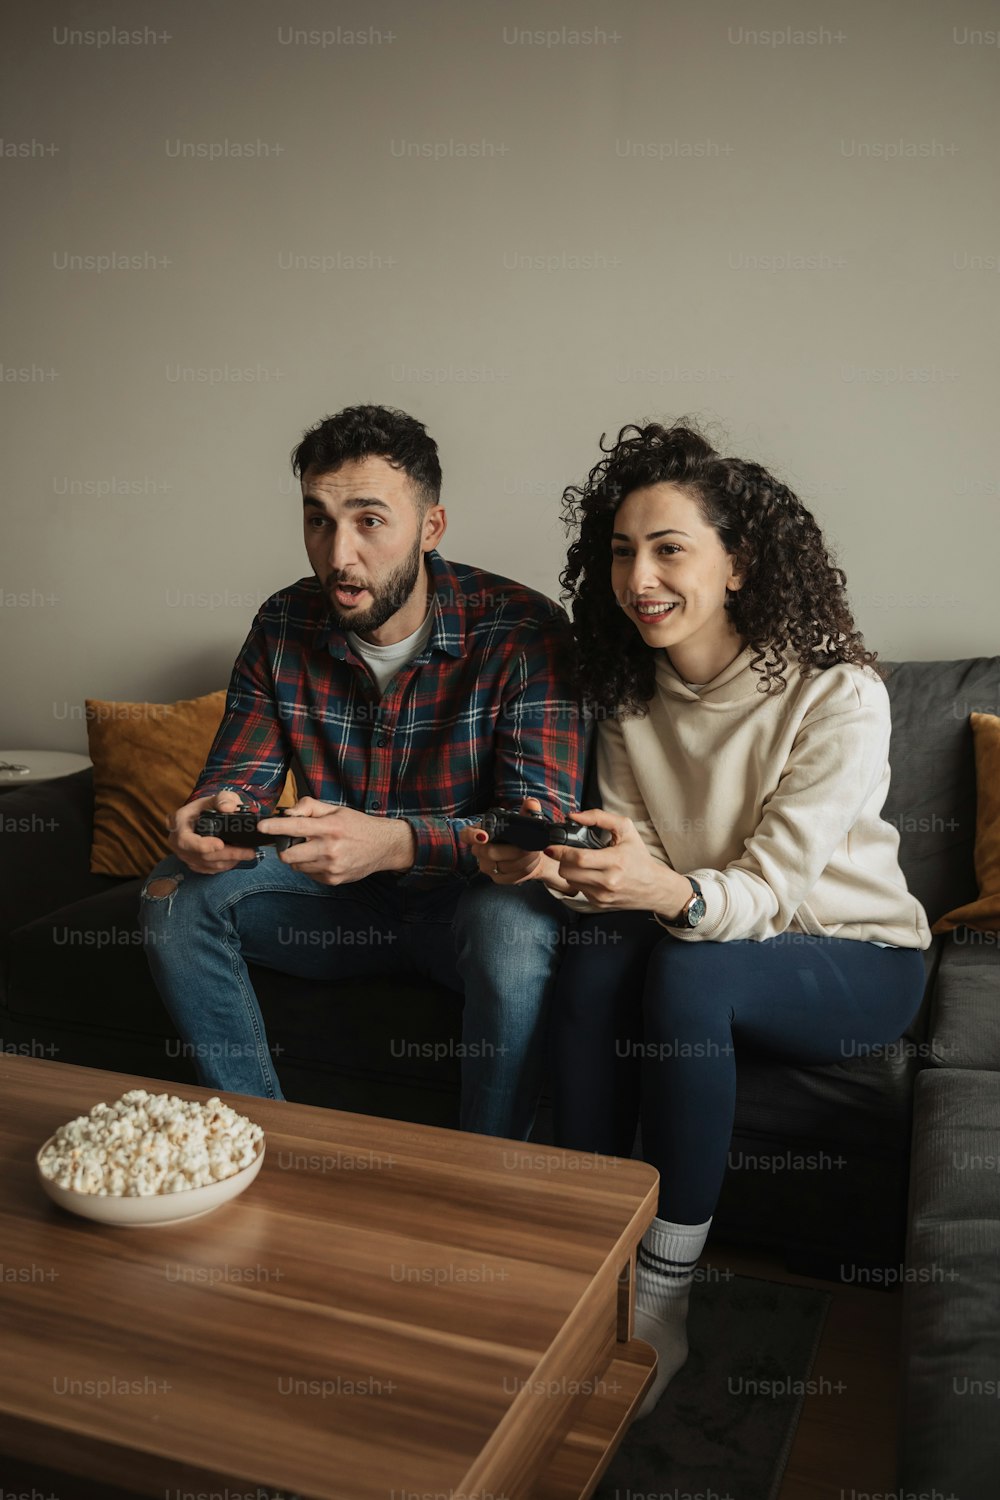 Un homme et une femme assis sur un canapé jouant à un jeu vidéo